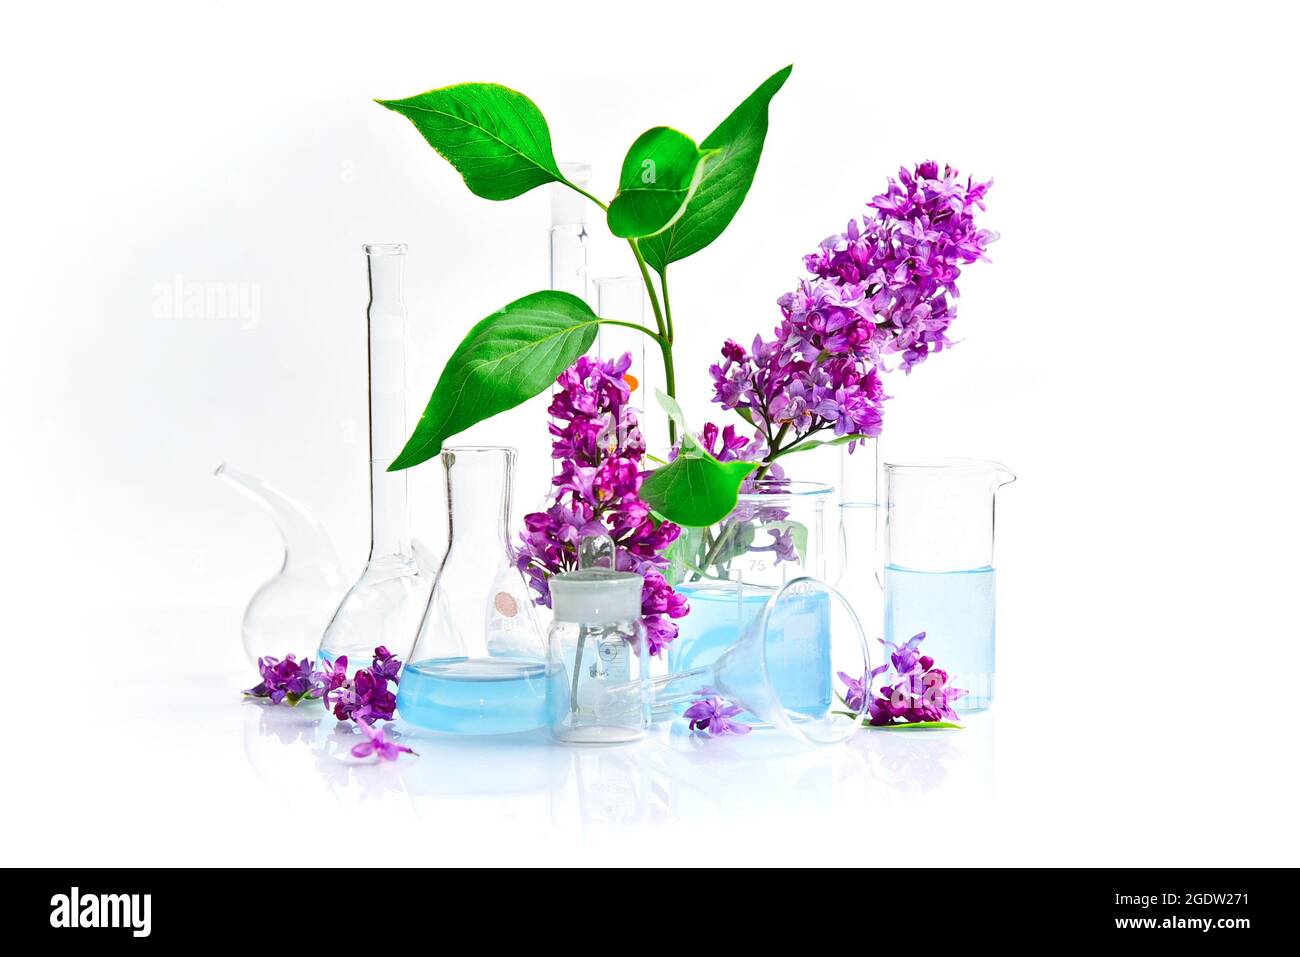 Vetreria da laboratorio per analisi chimiche e lavori chimici con fiori su sfondo bianco Foto Stock